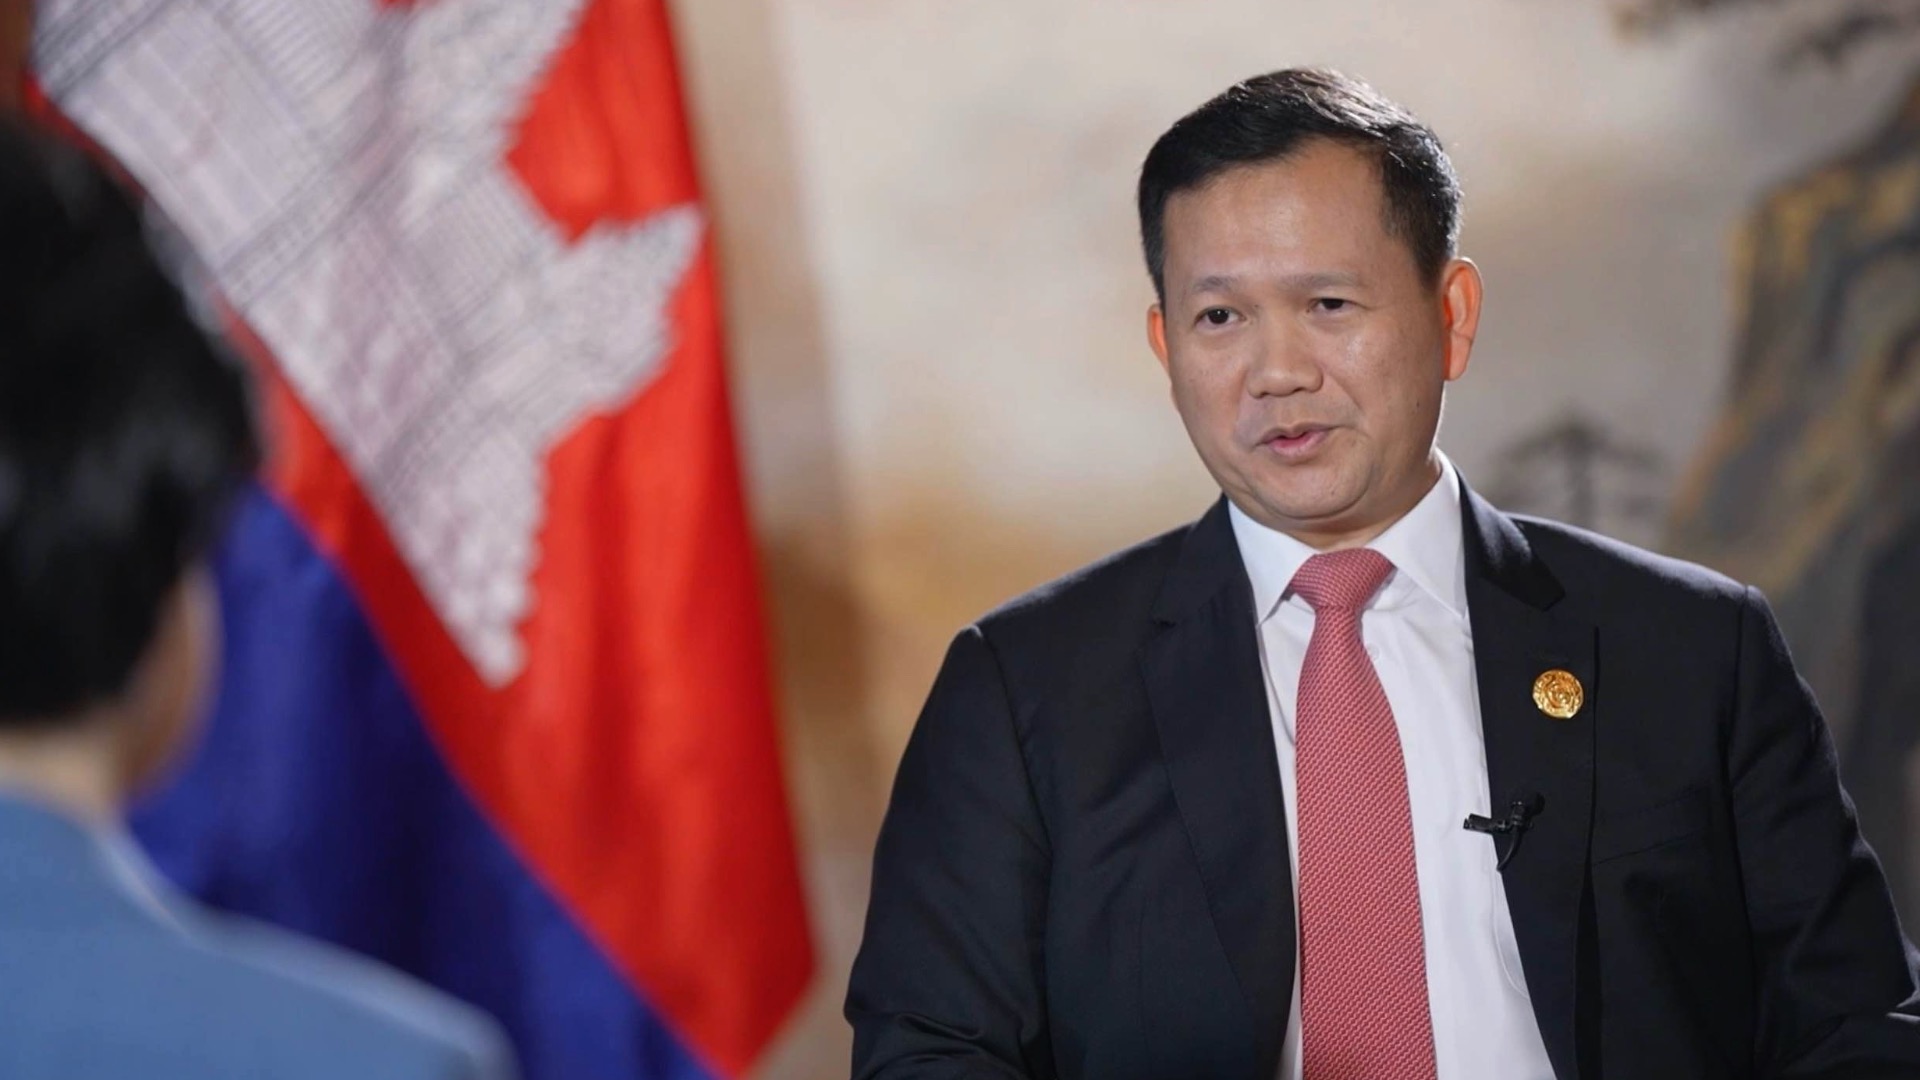 نخست وزیر کامبوج: کشور ما از ابتکار کمربند و جاده بهره برده استا